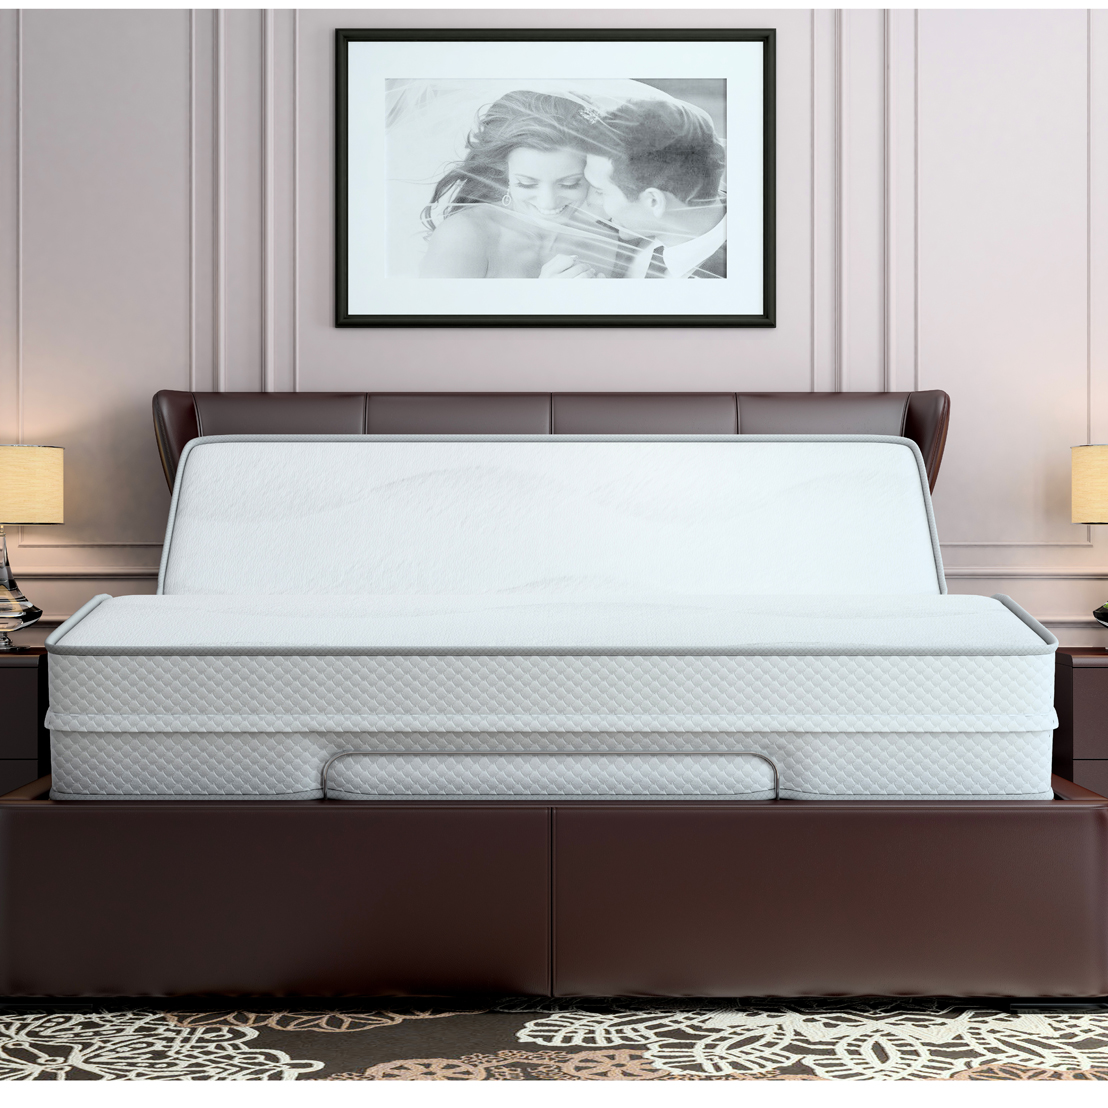 高級名床 TRECA Paris台灣總代理 創造睡眠藝術的專家進口床墊推薦品牌